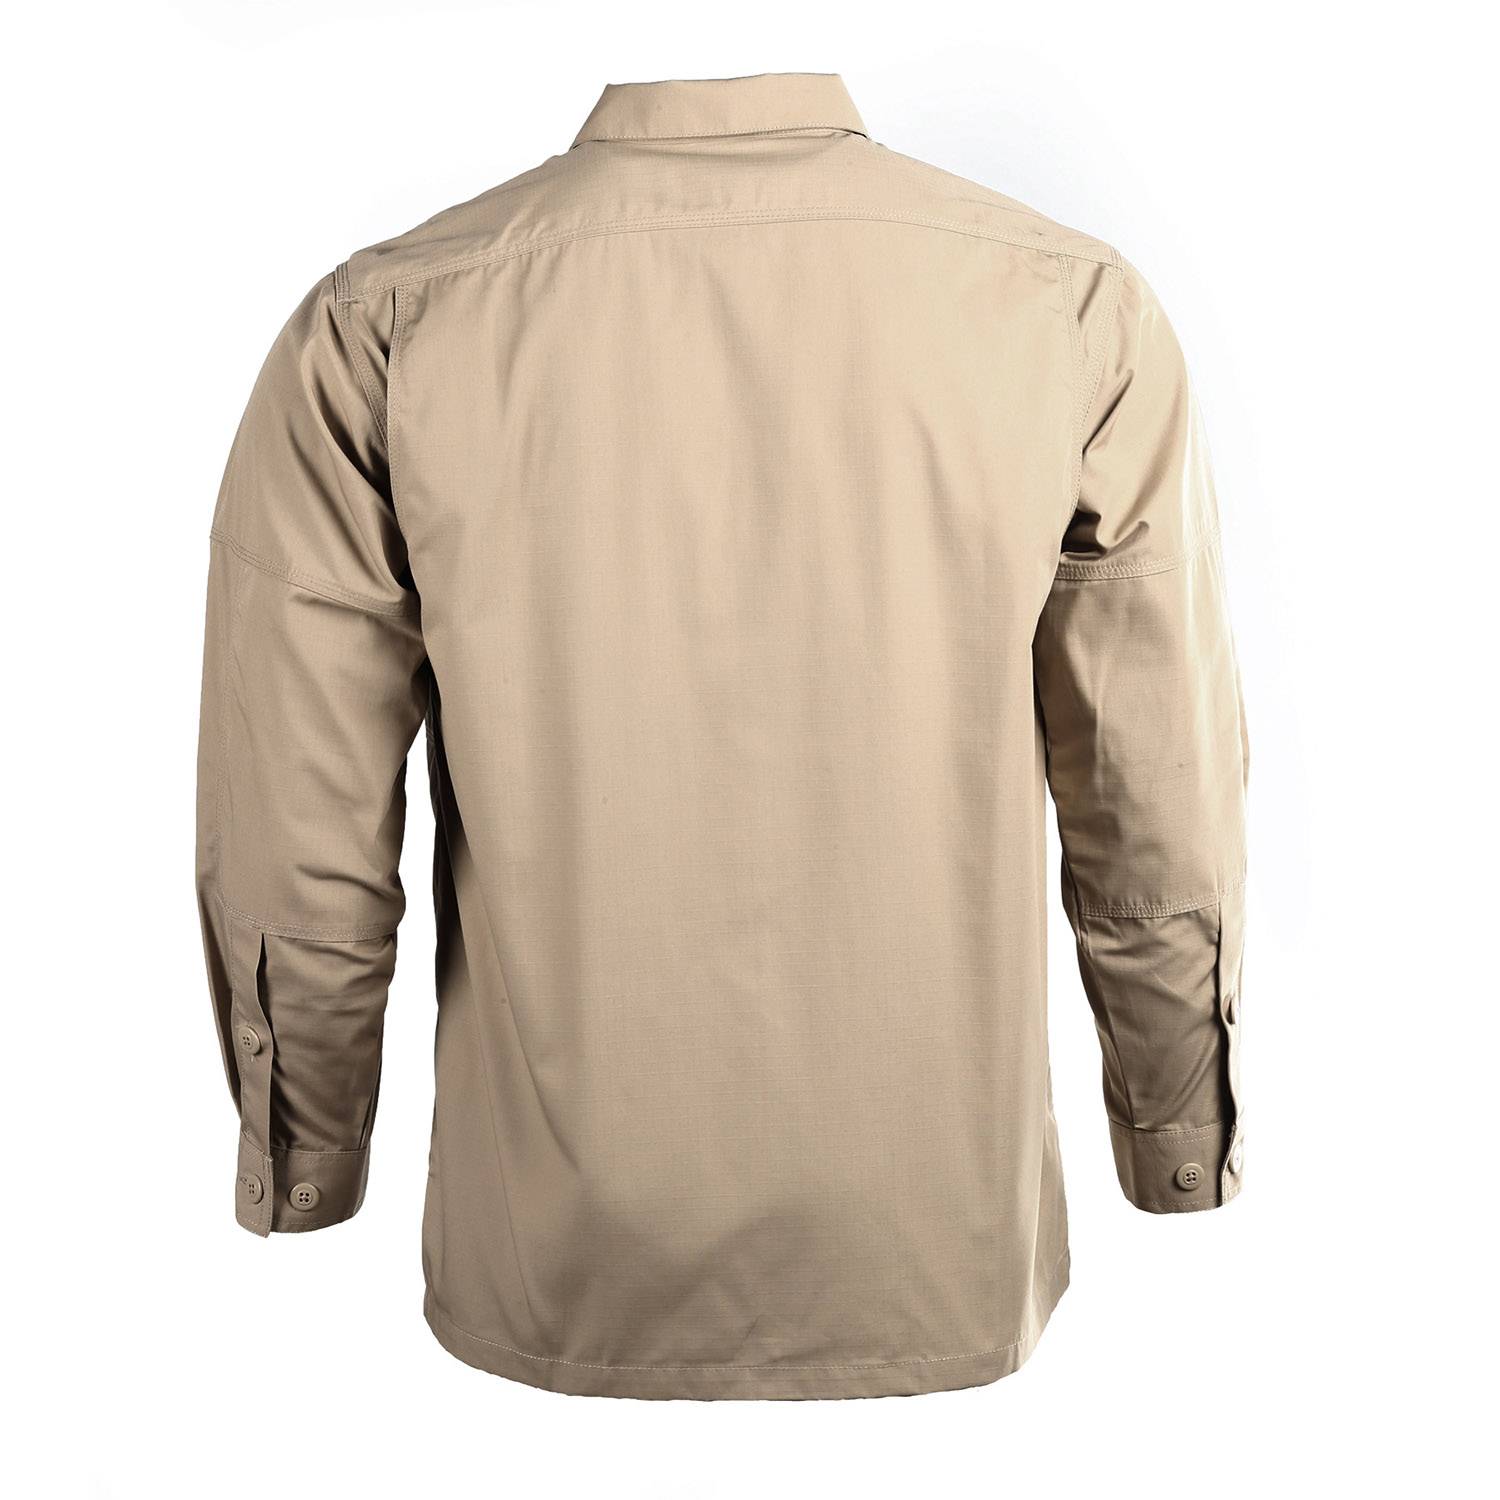 5.11 Tactical TDU Shirt